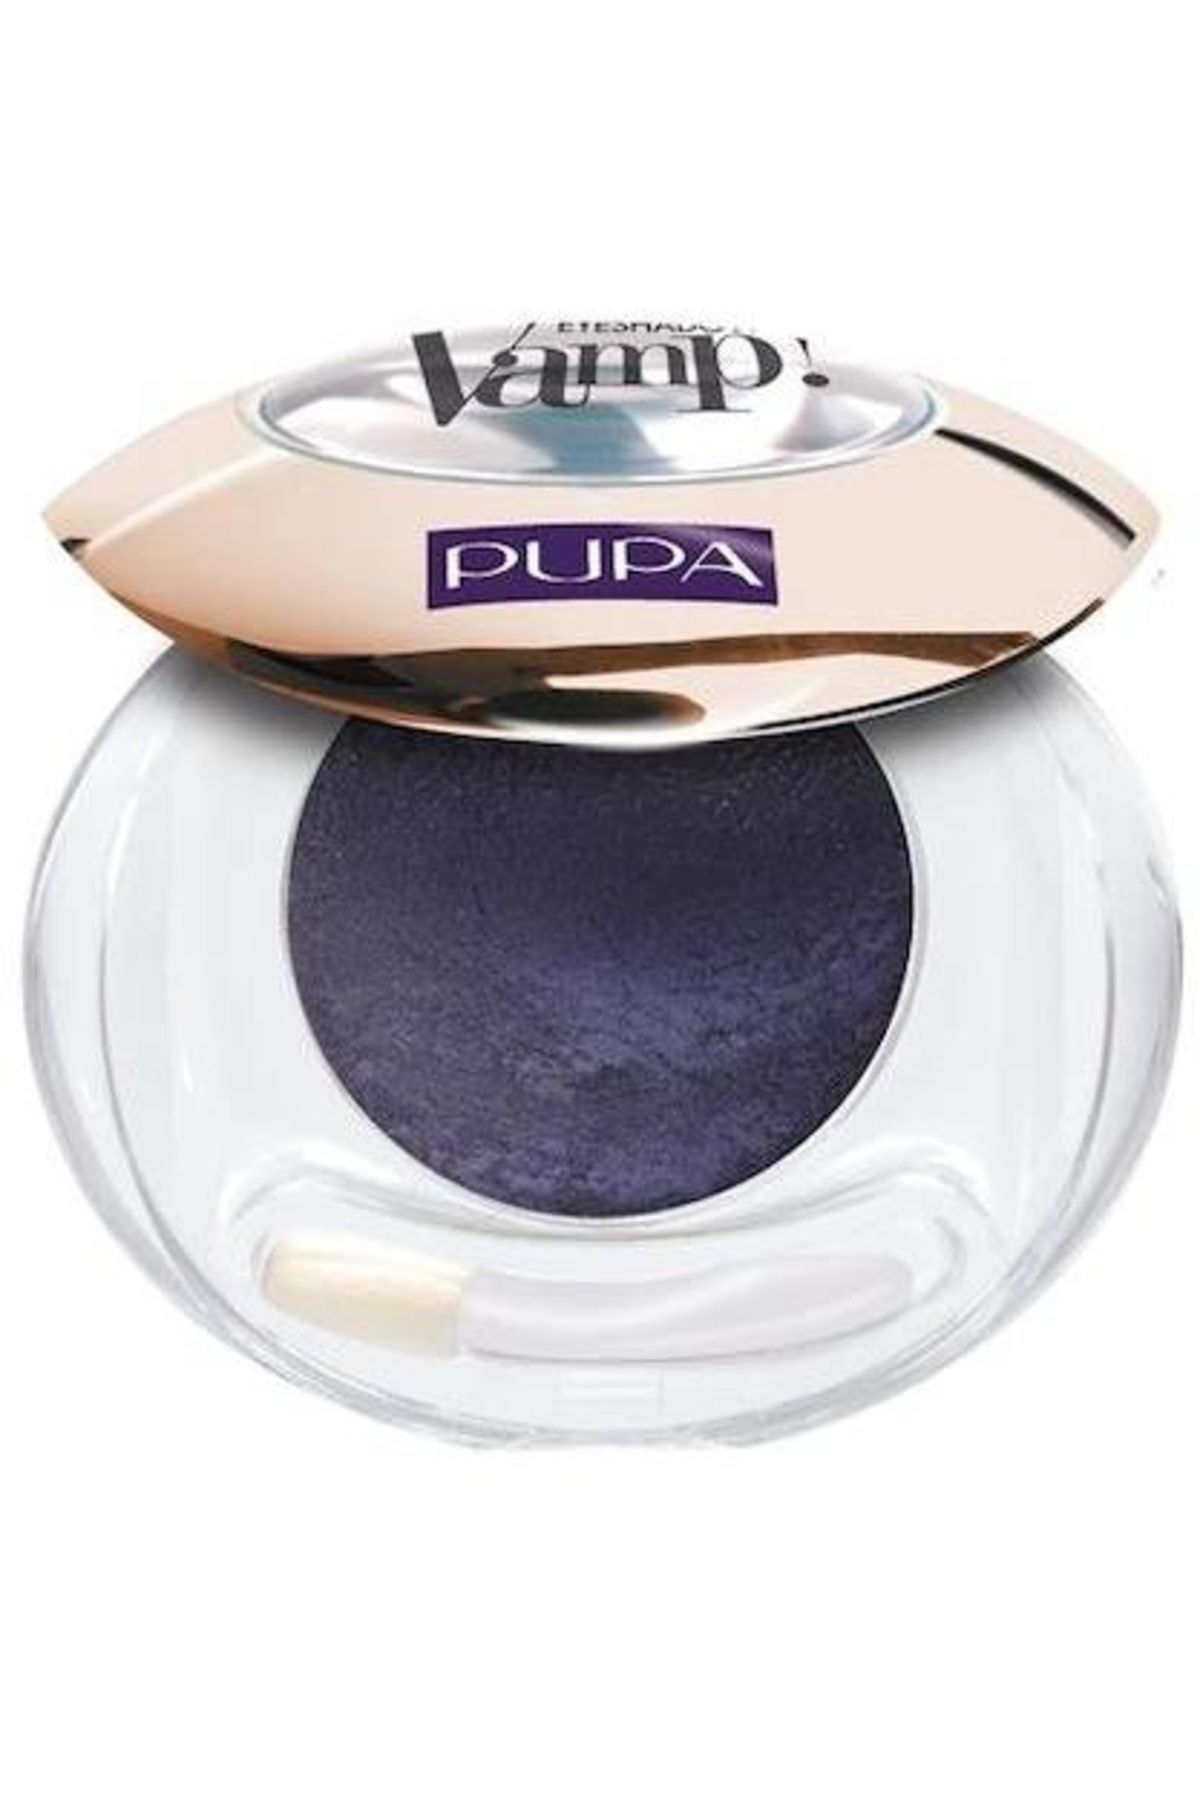 Pupa Milano Göz Farı - Vamp Wet & Dry Eyeshadow 002 Deep Purple 8011607215287